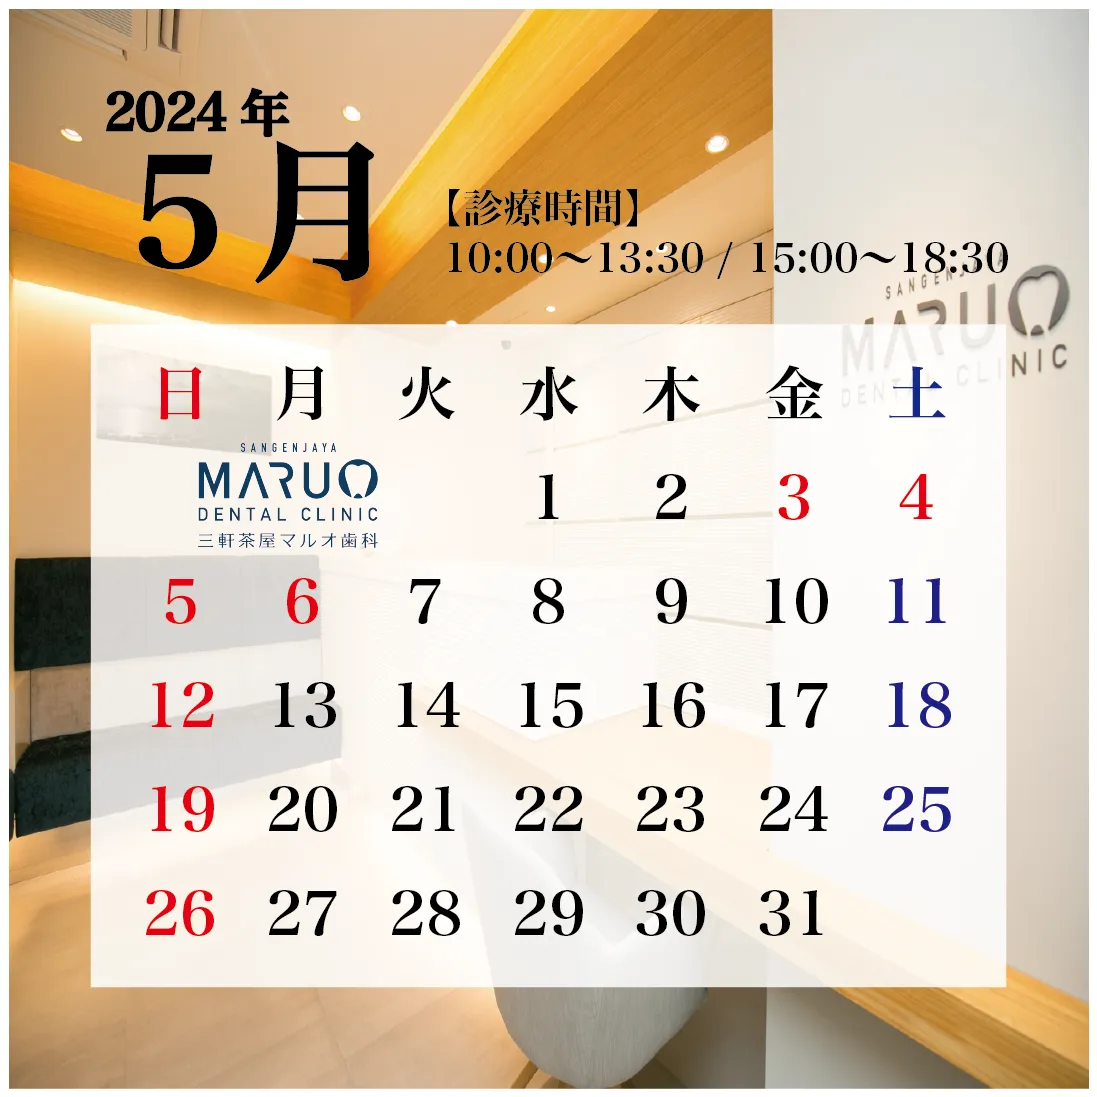 三軒茶屋マルオ歯科の診療日カレンダー